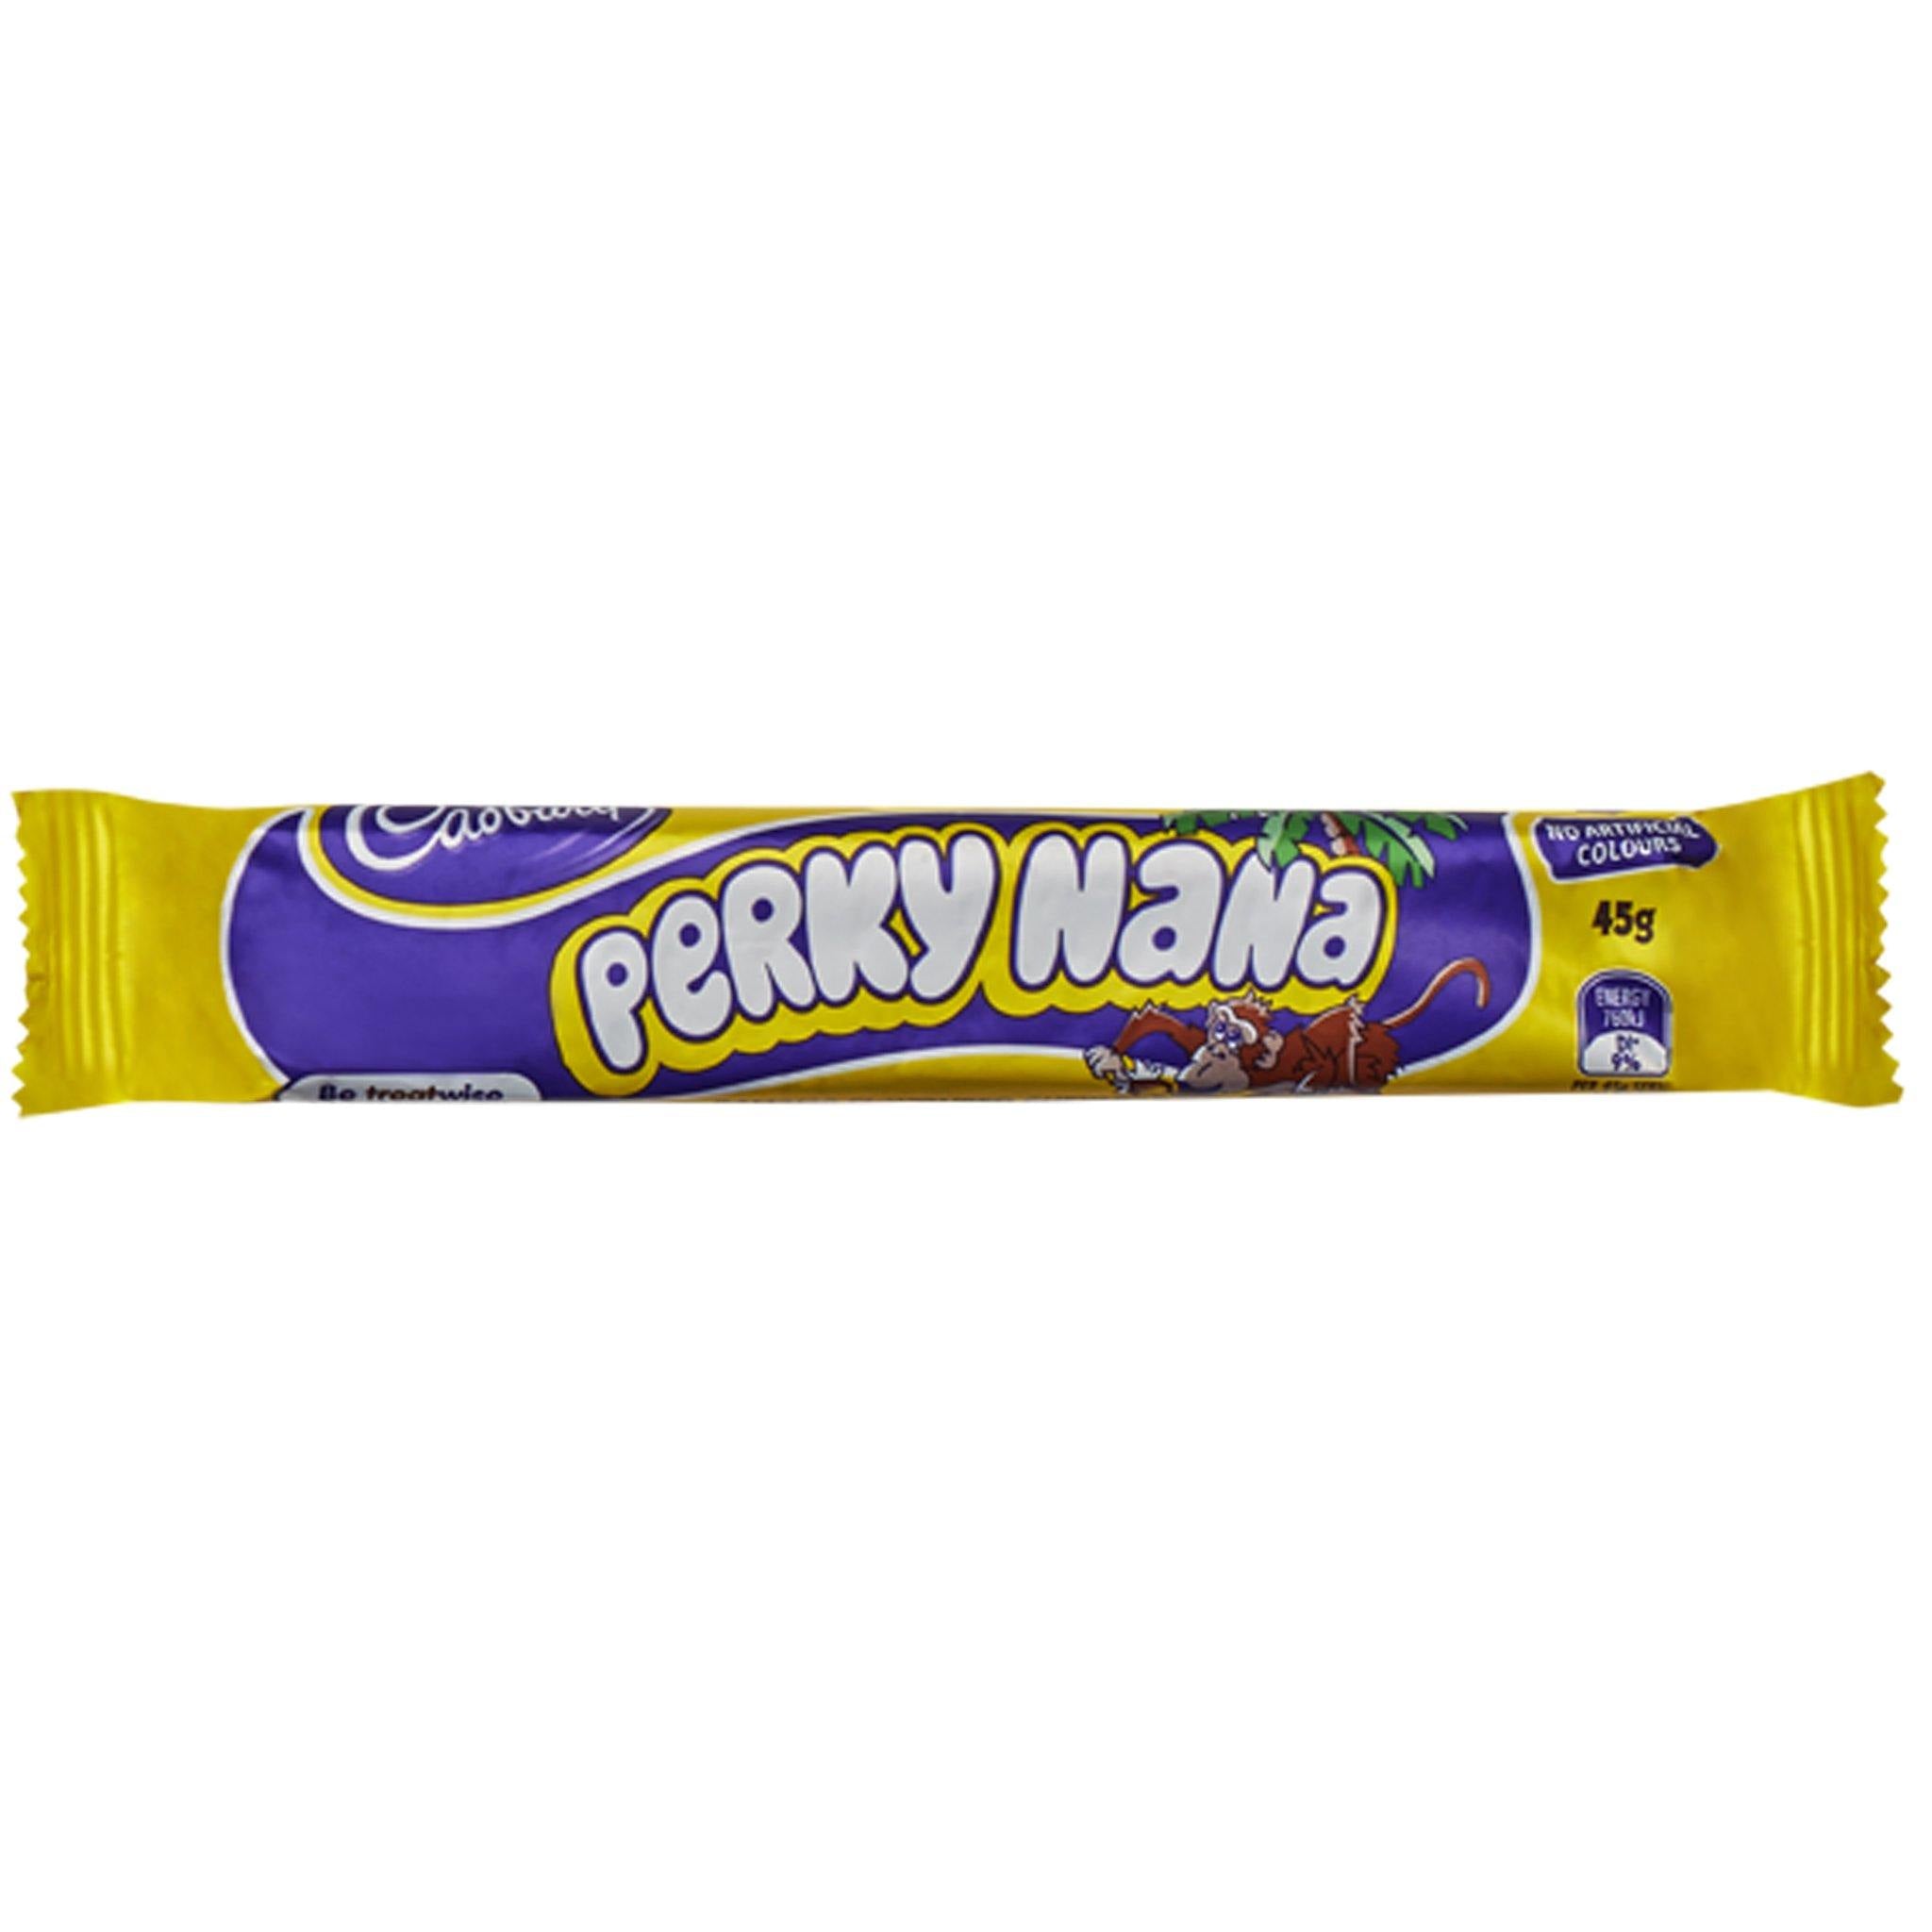 Cadbury Perky Nana - Australia - Sweet Exotics